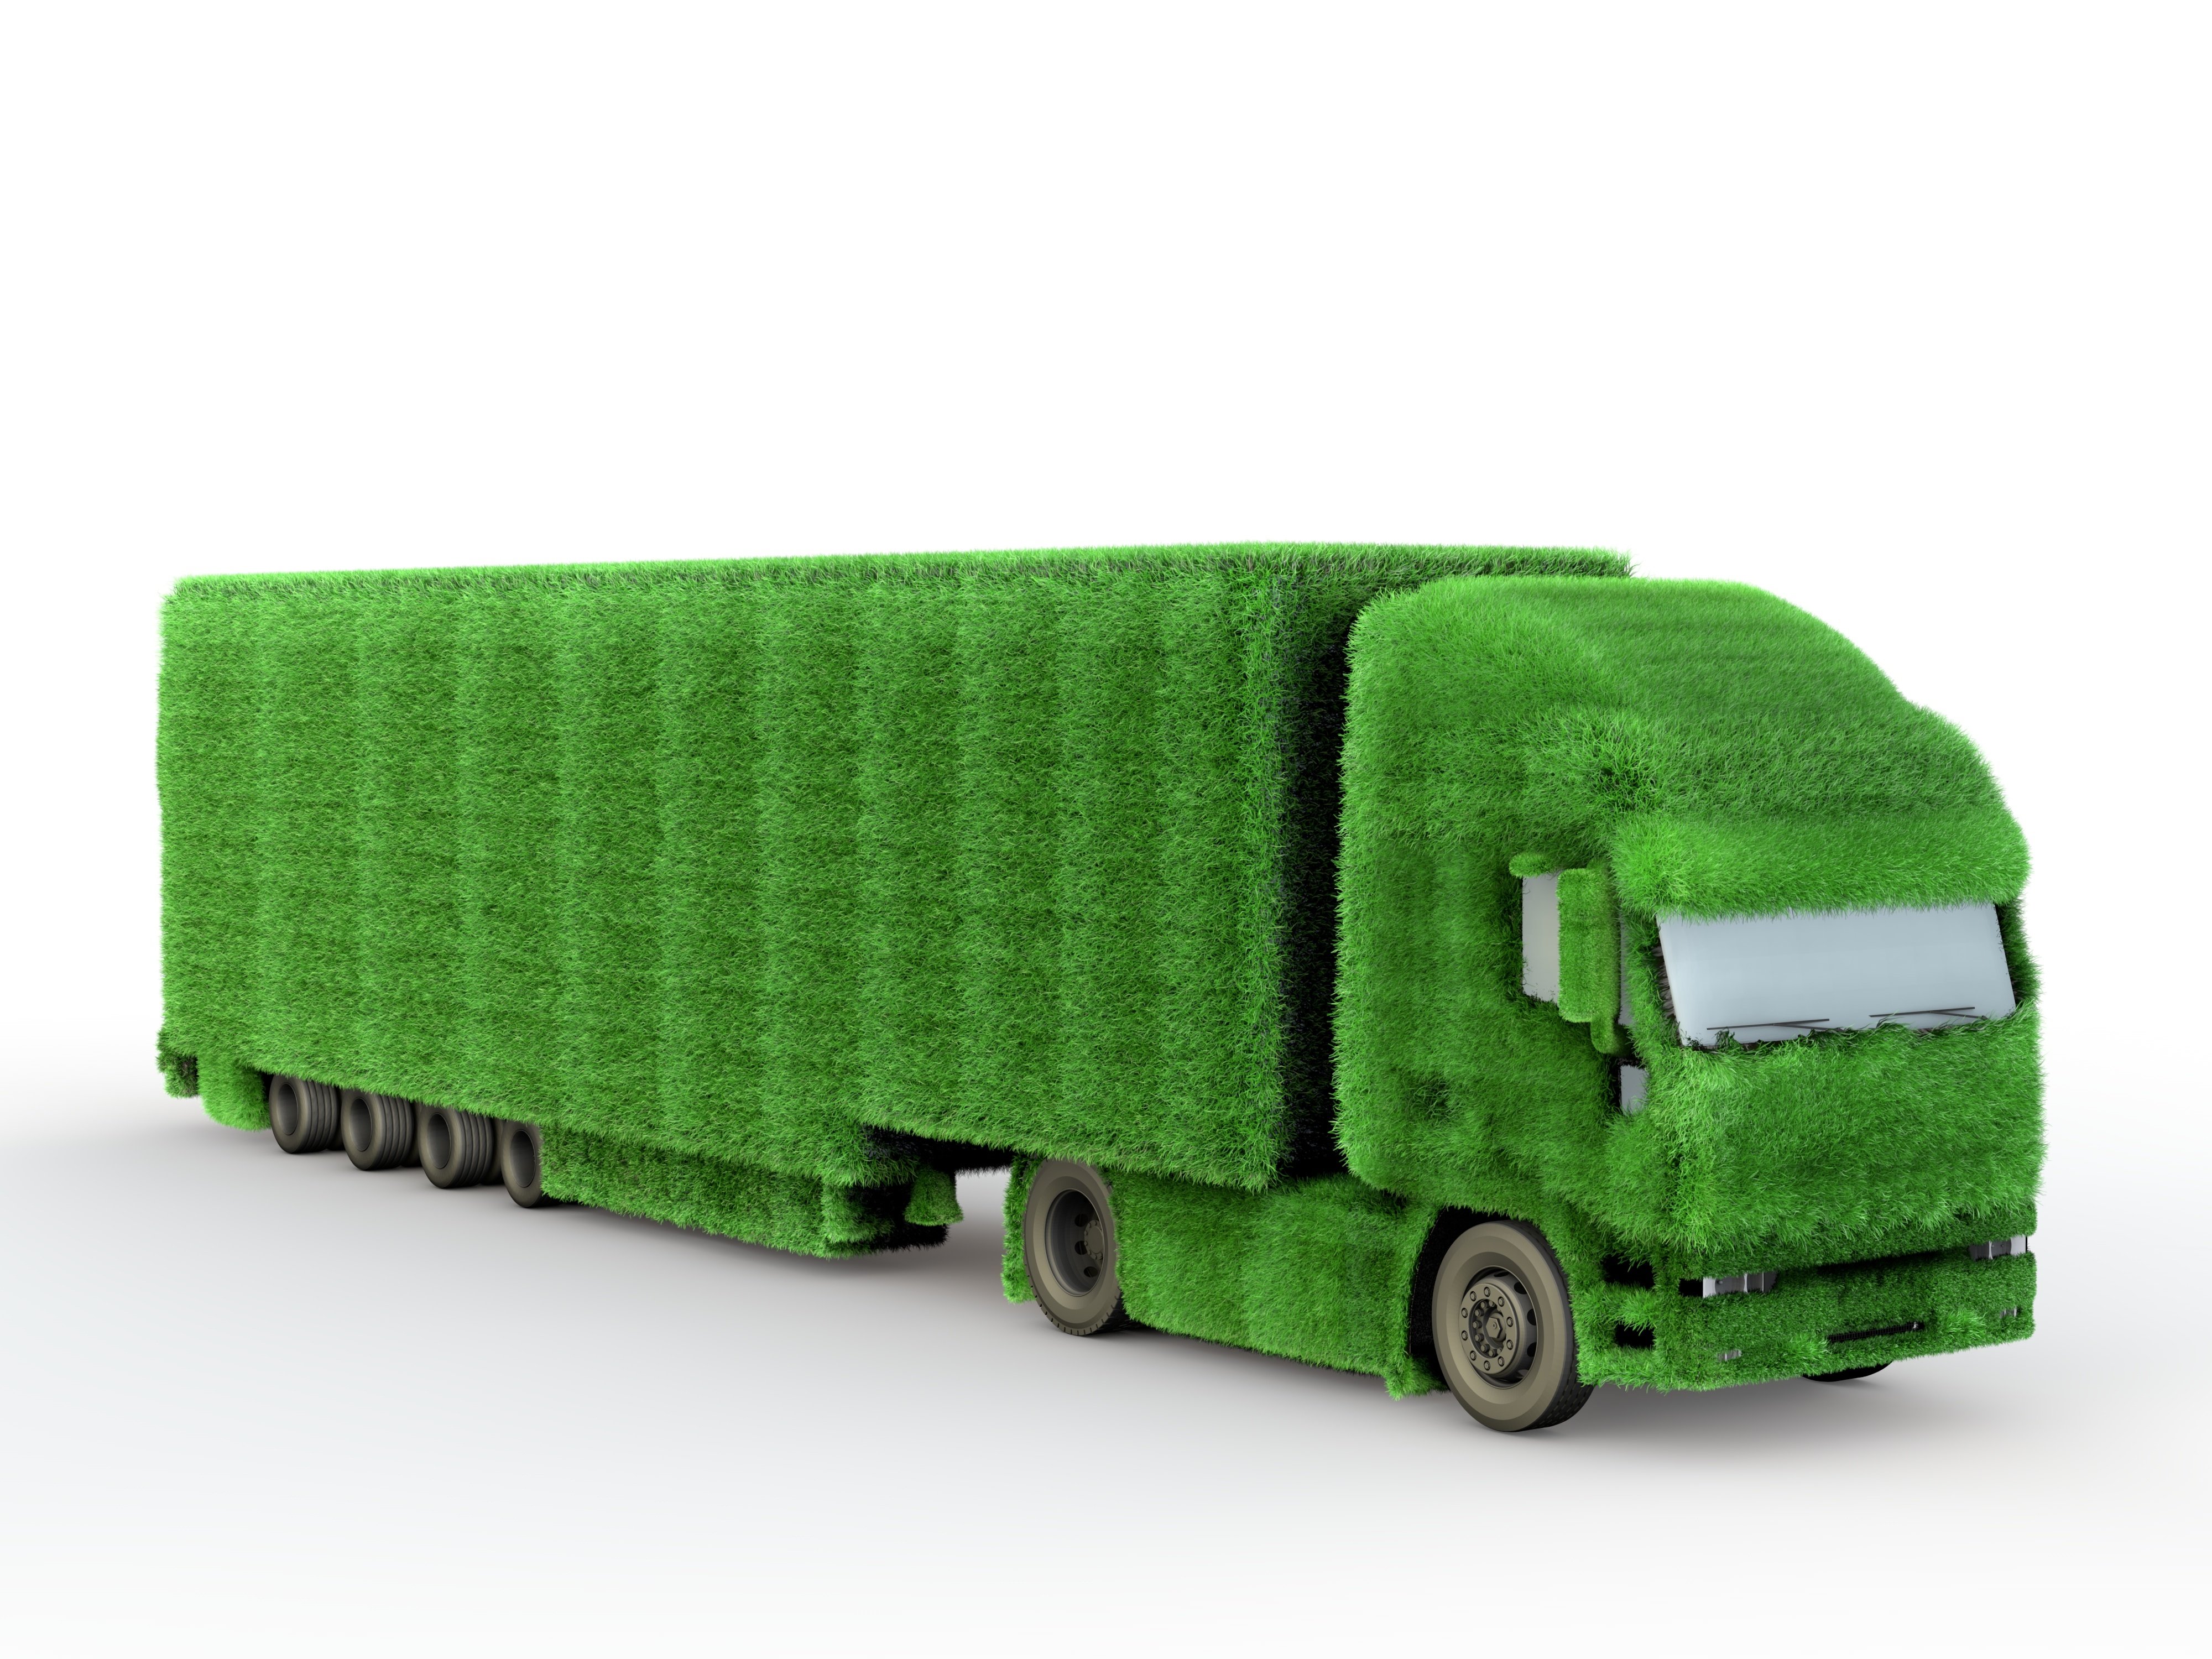 Green grass covering a 18 wheeler transport truck